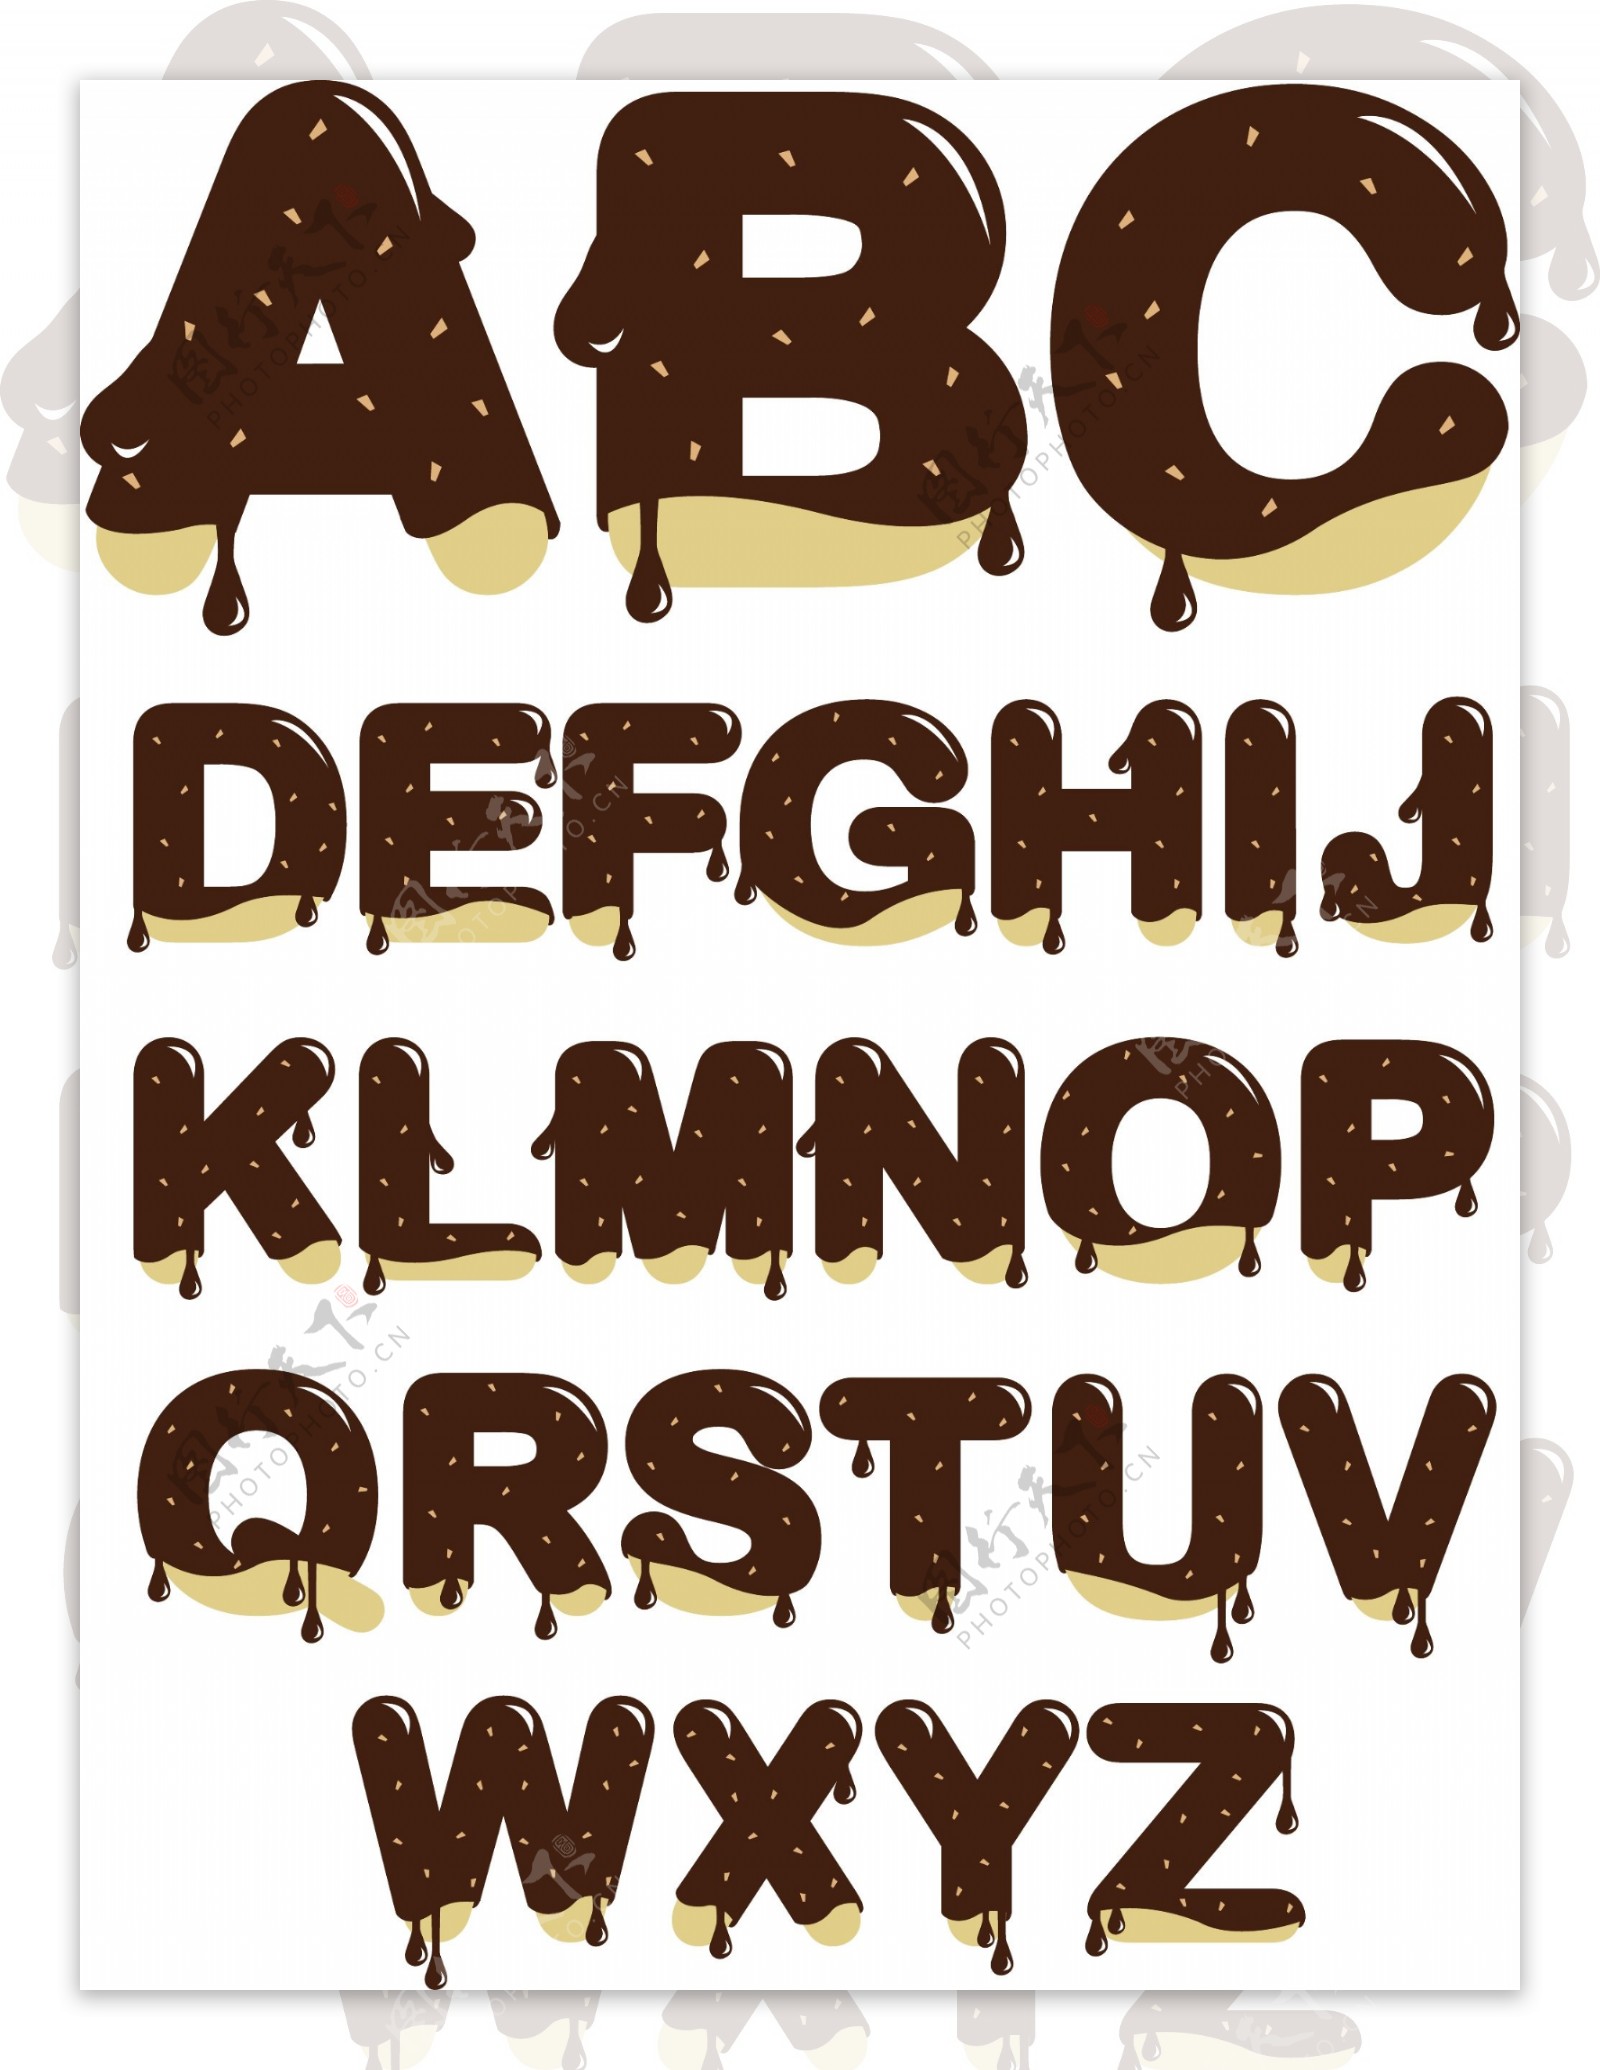 巧克力字母矢量